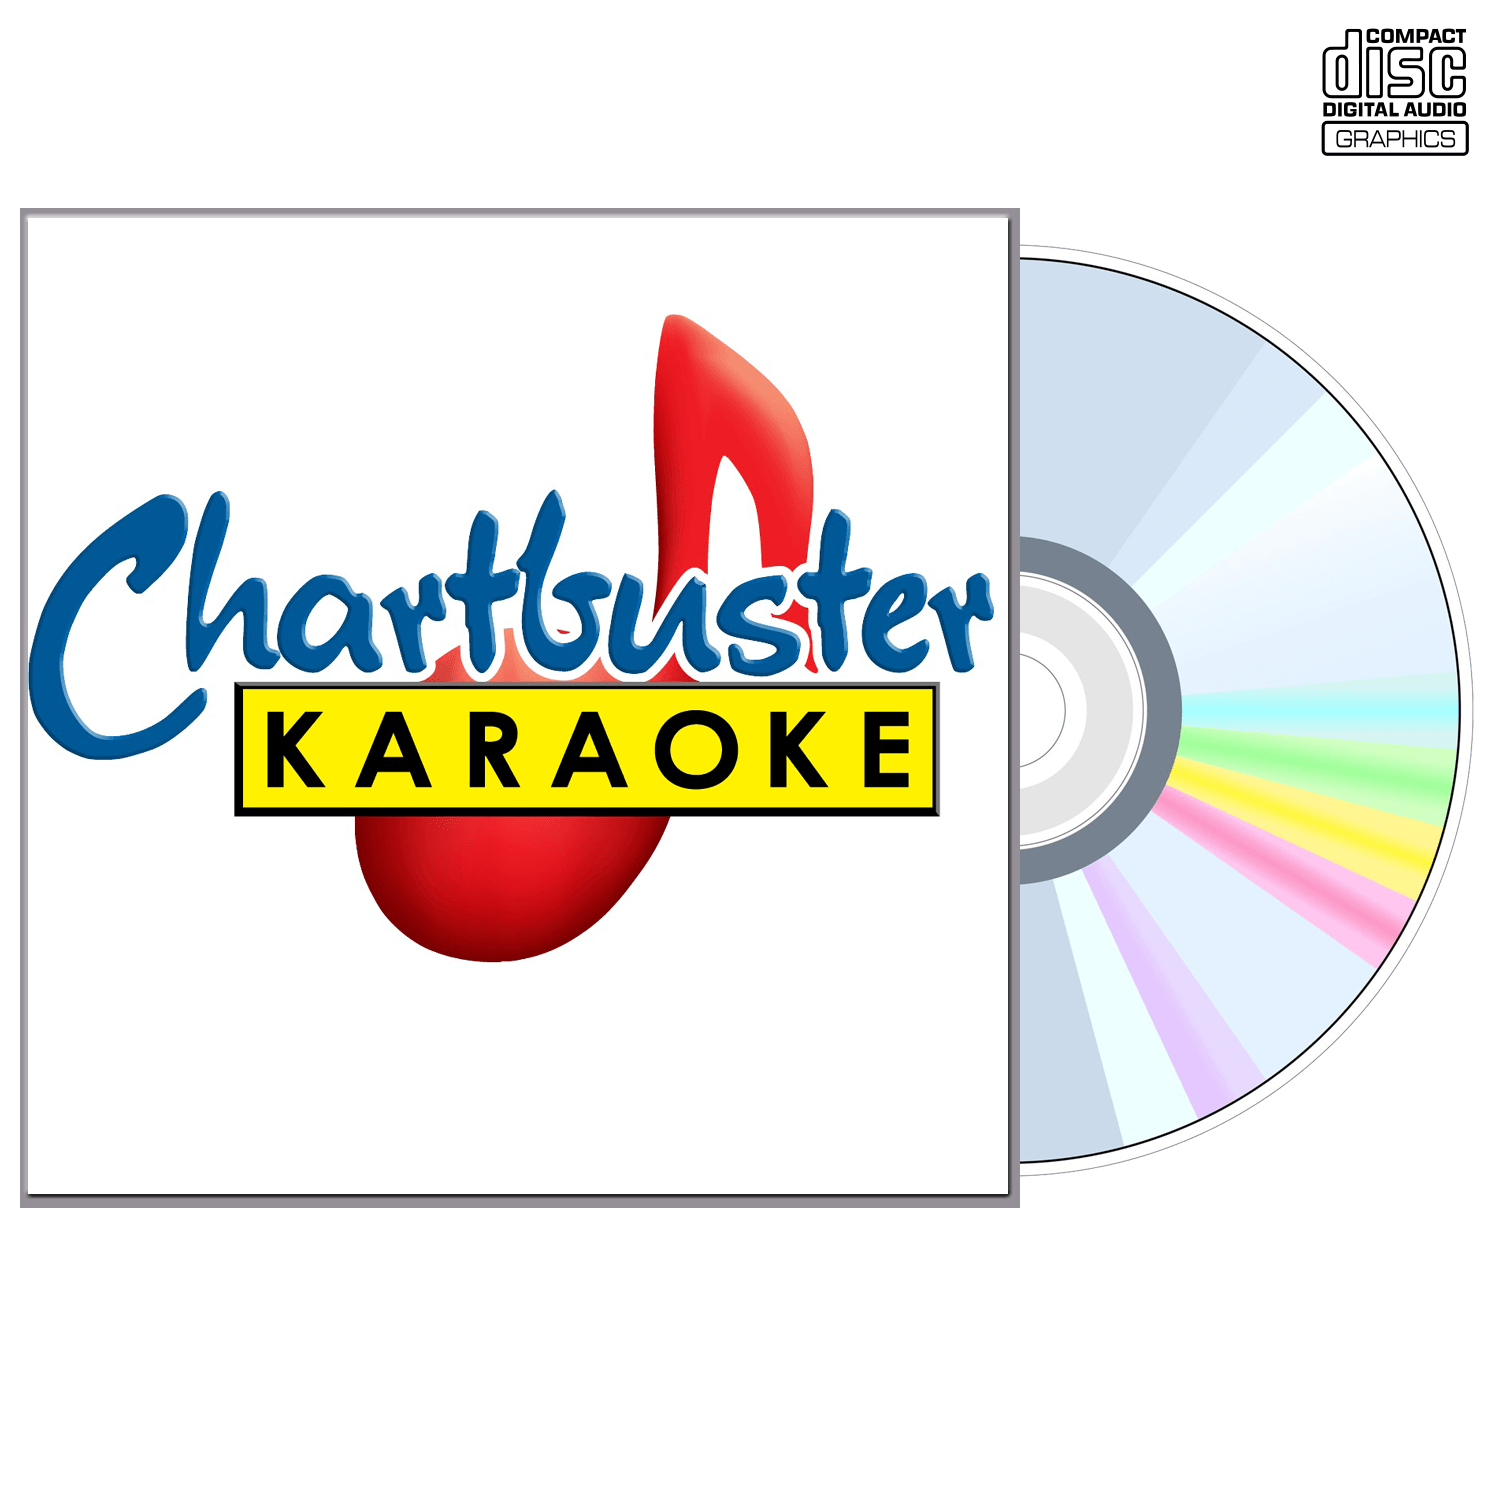 Allison Moorer - CD+G - Chartbuster Karaoke - Karaoke Home Entertainment